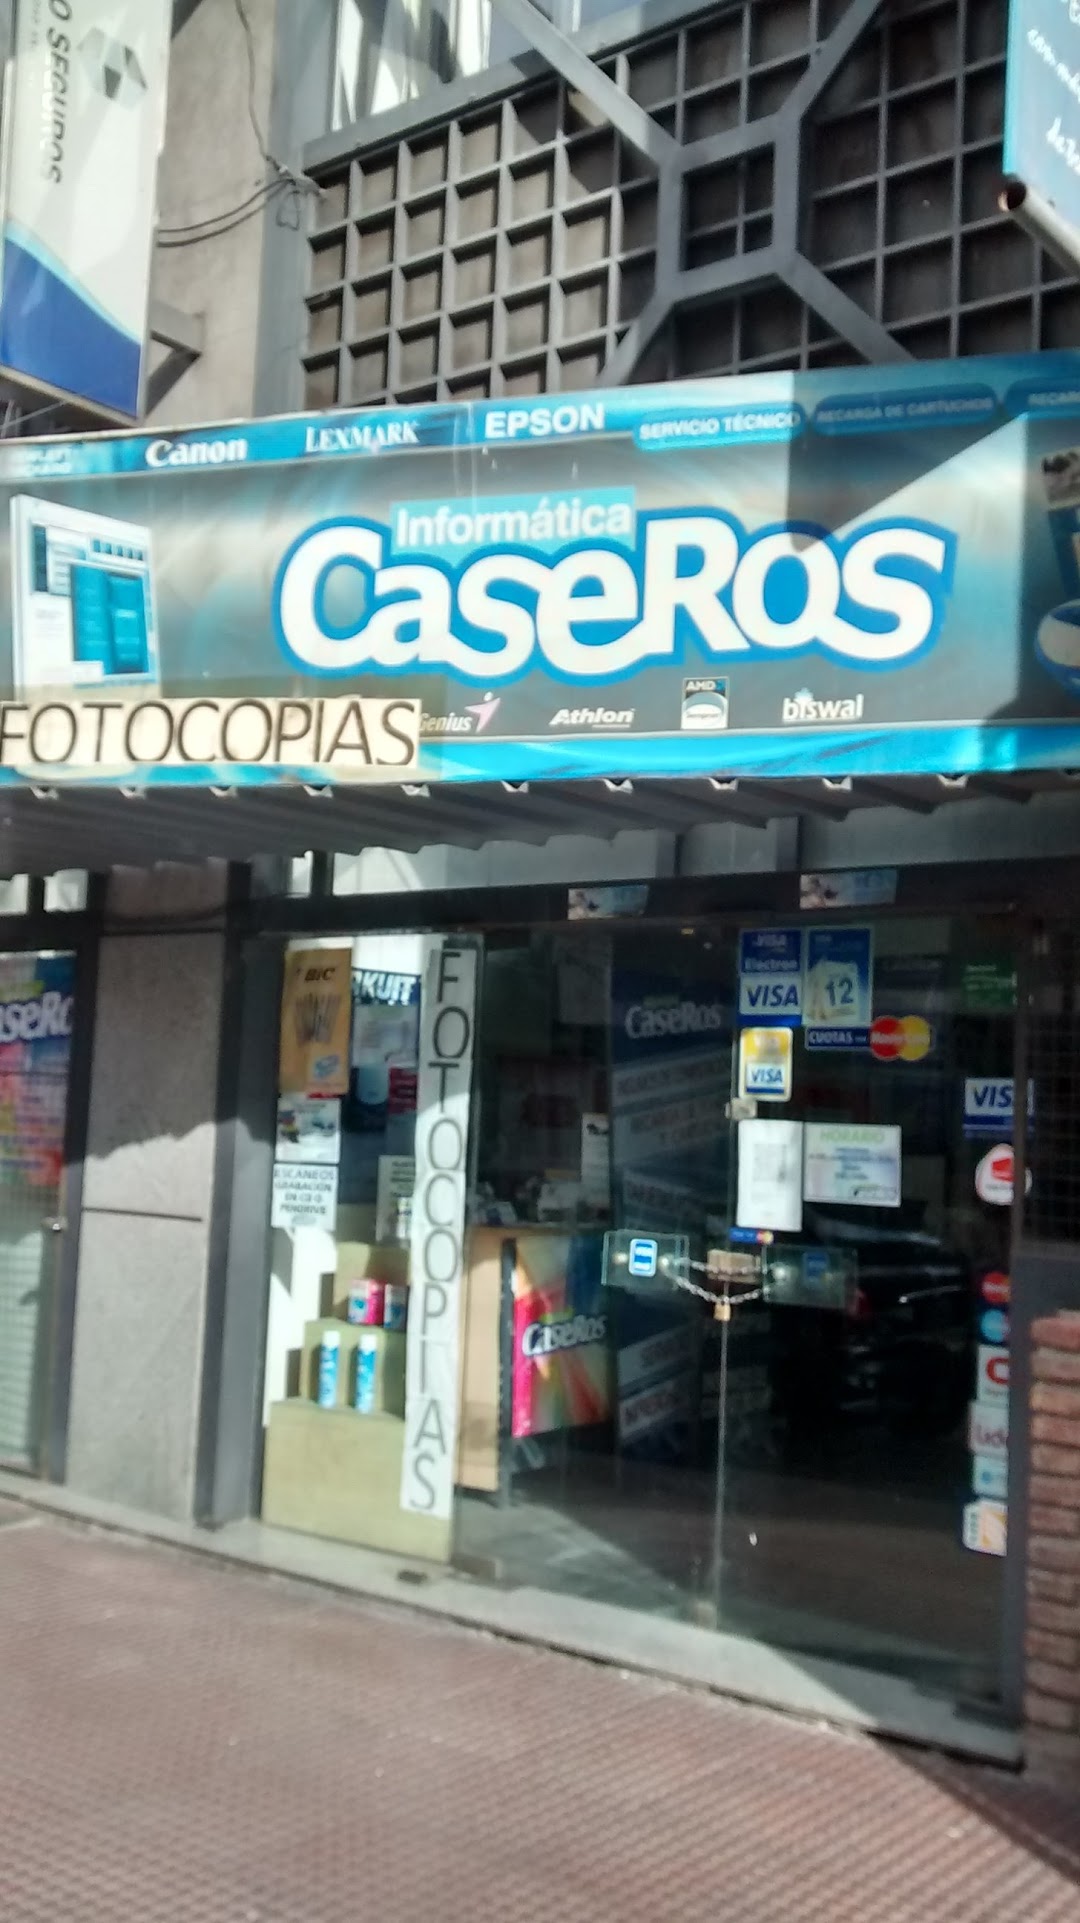 Informática Caseros